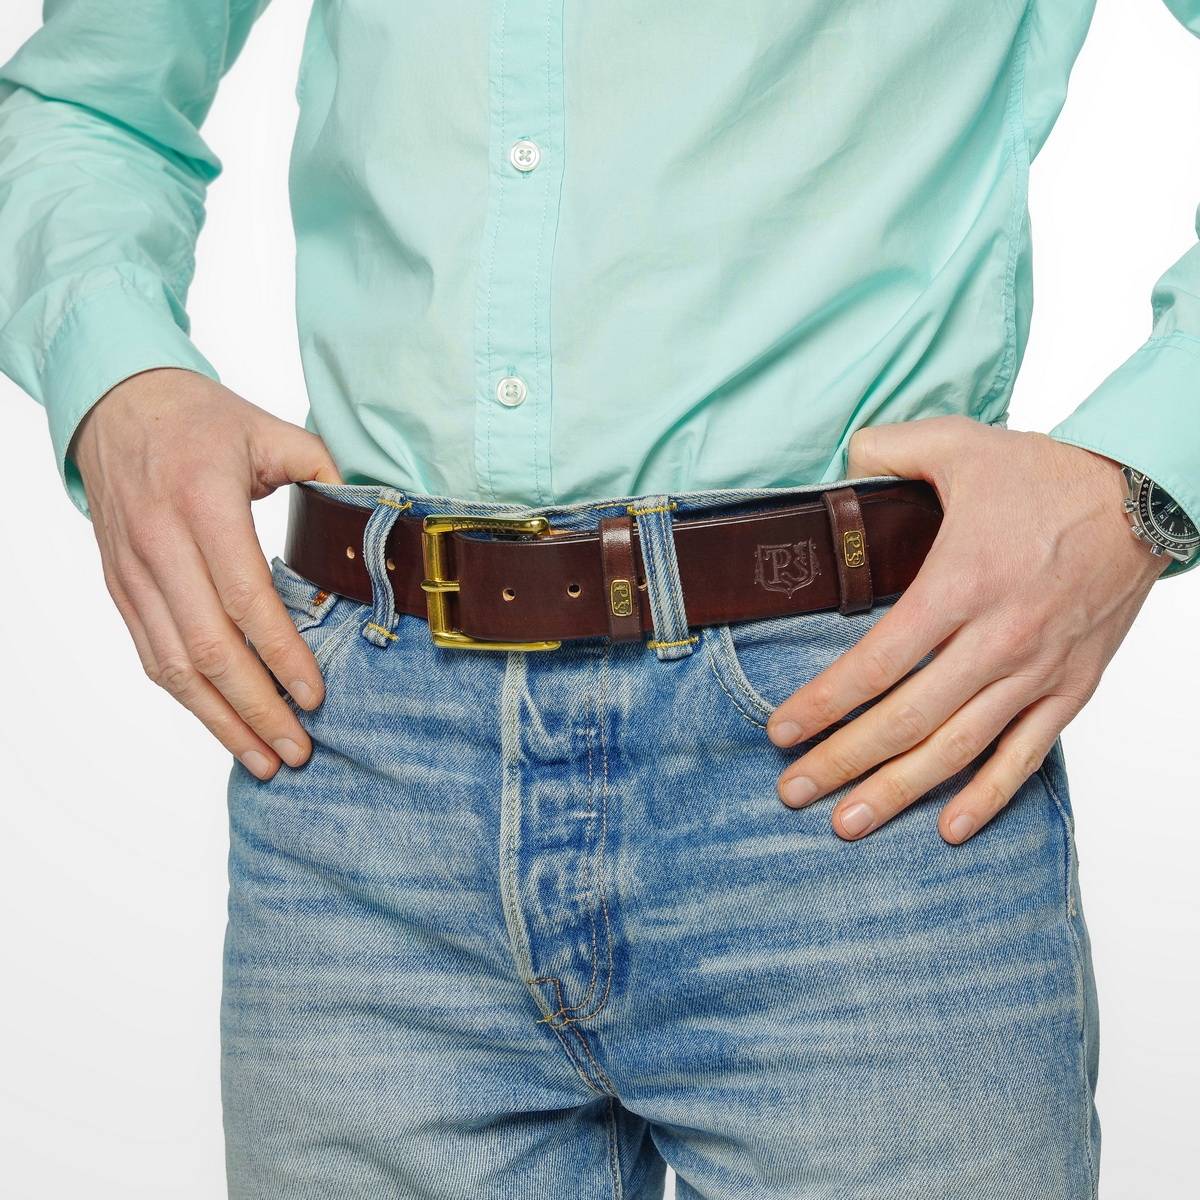 Знакомство с трендами / как правильно носить ремень на джинсах? /правильный пояс для мужчин,  110 фото